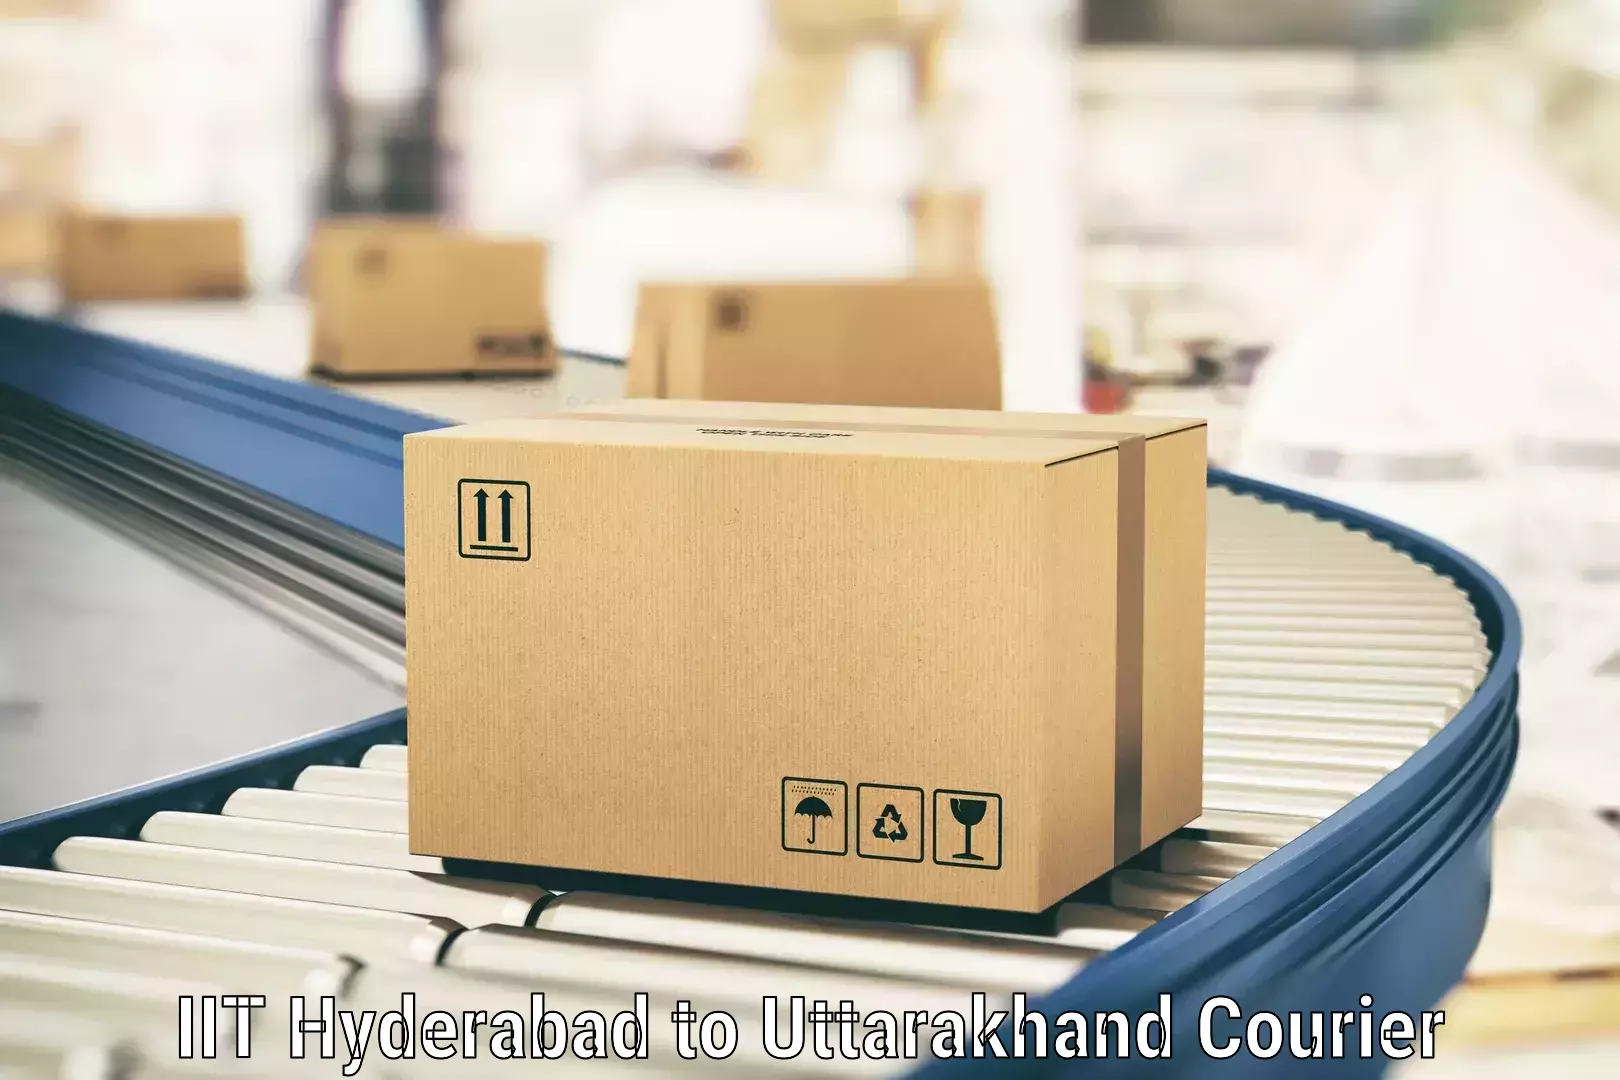 High-priority parcel service IIT Hyderabad to Mussoorie